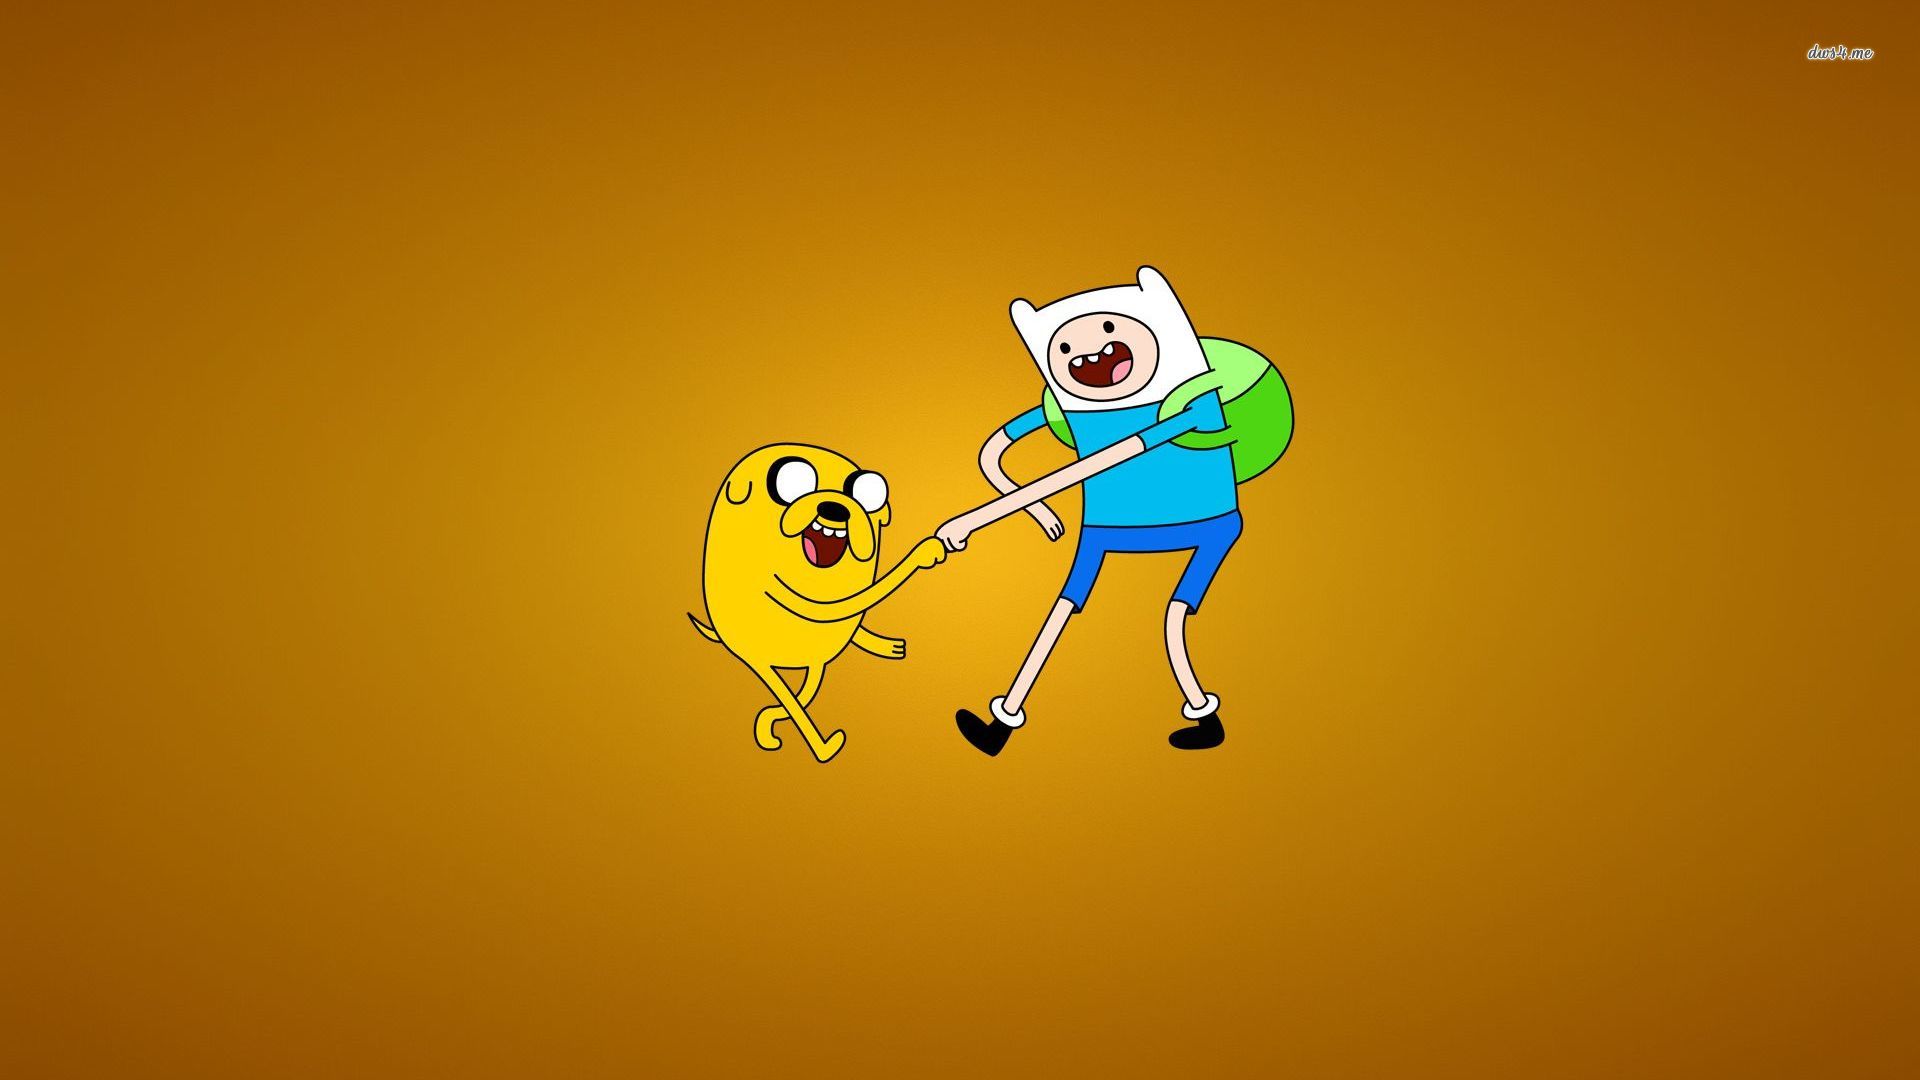 Adventure Time - Jake and Finn fist bumping wallpaper - Cartoon ...